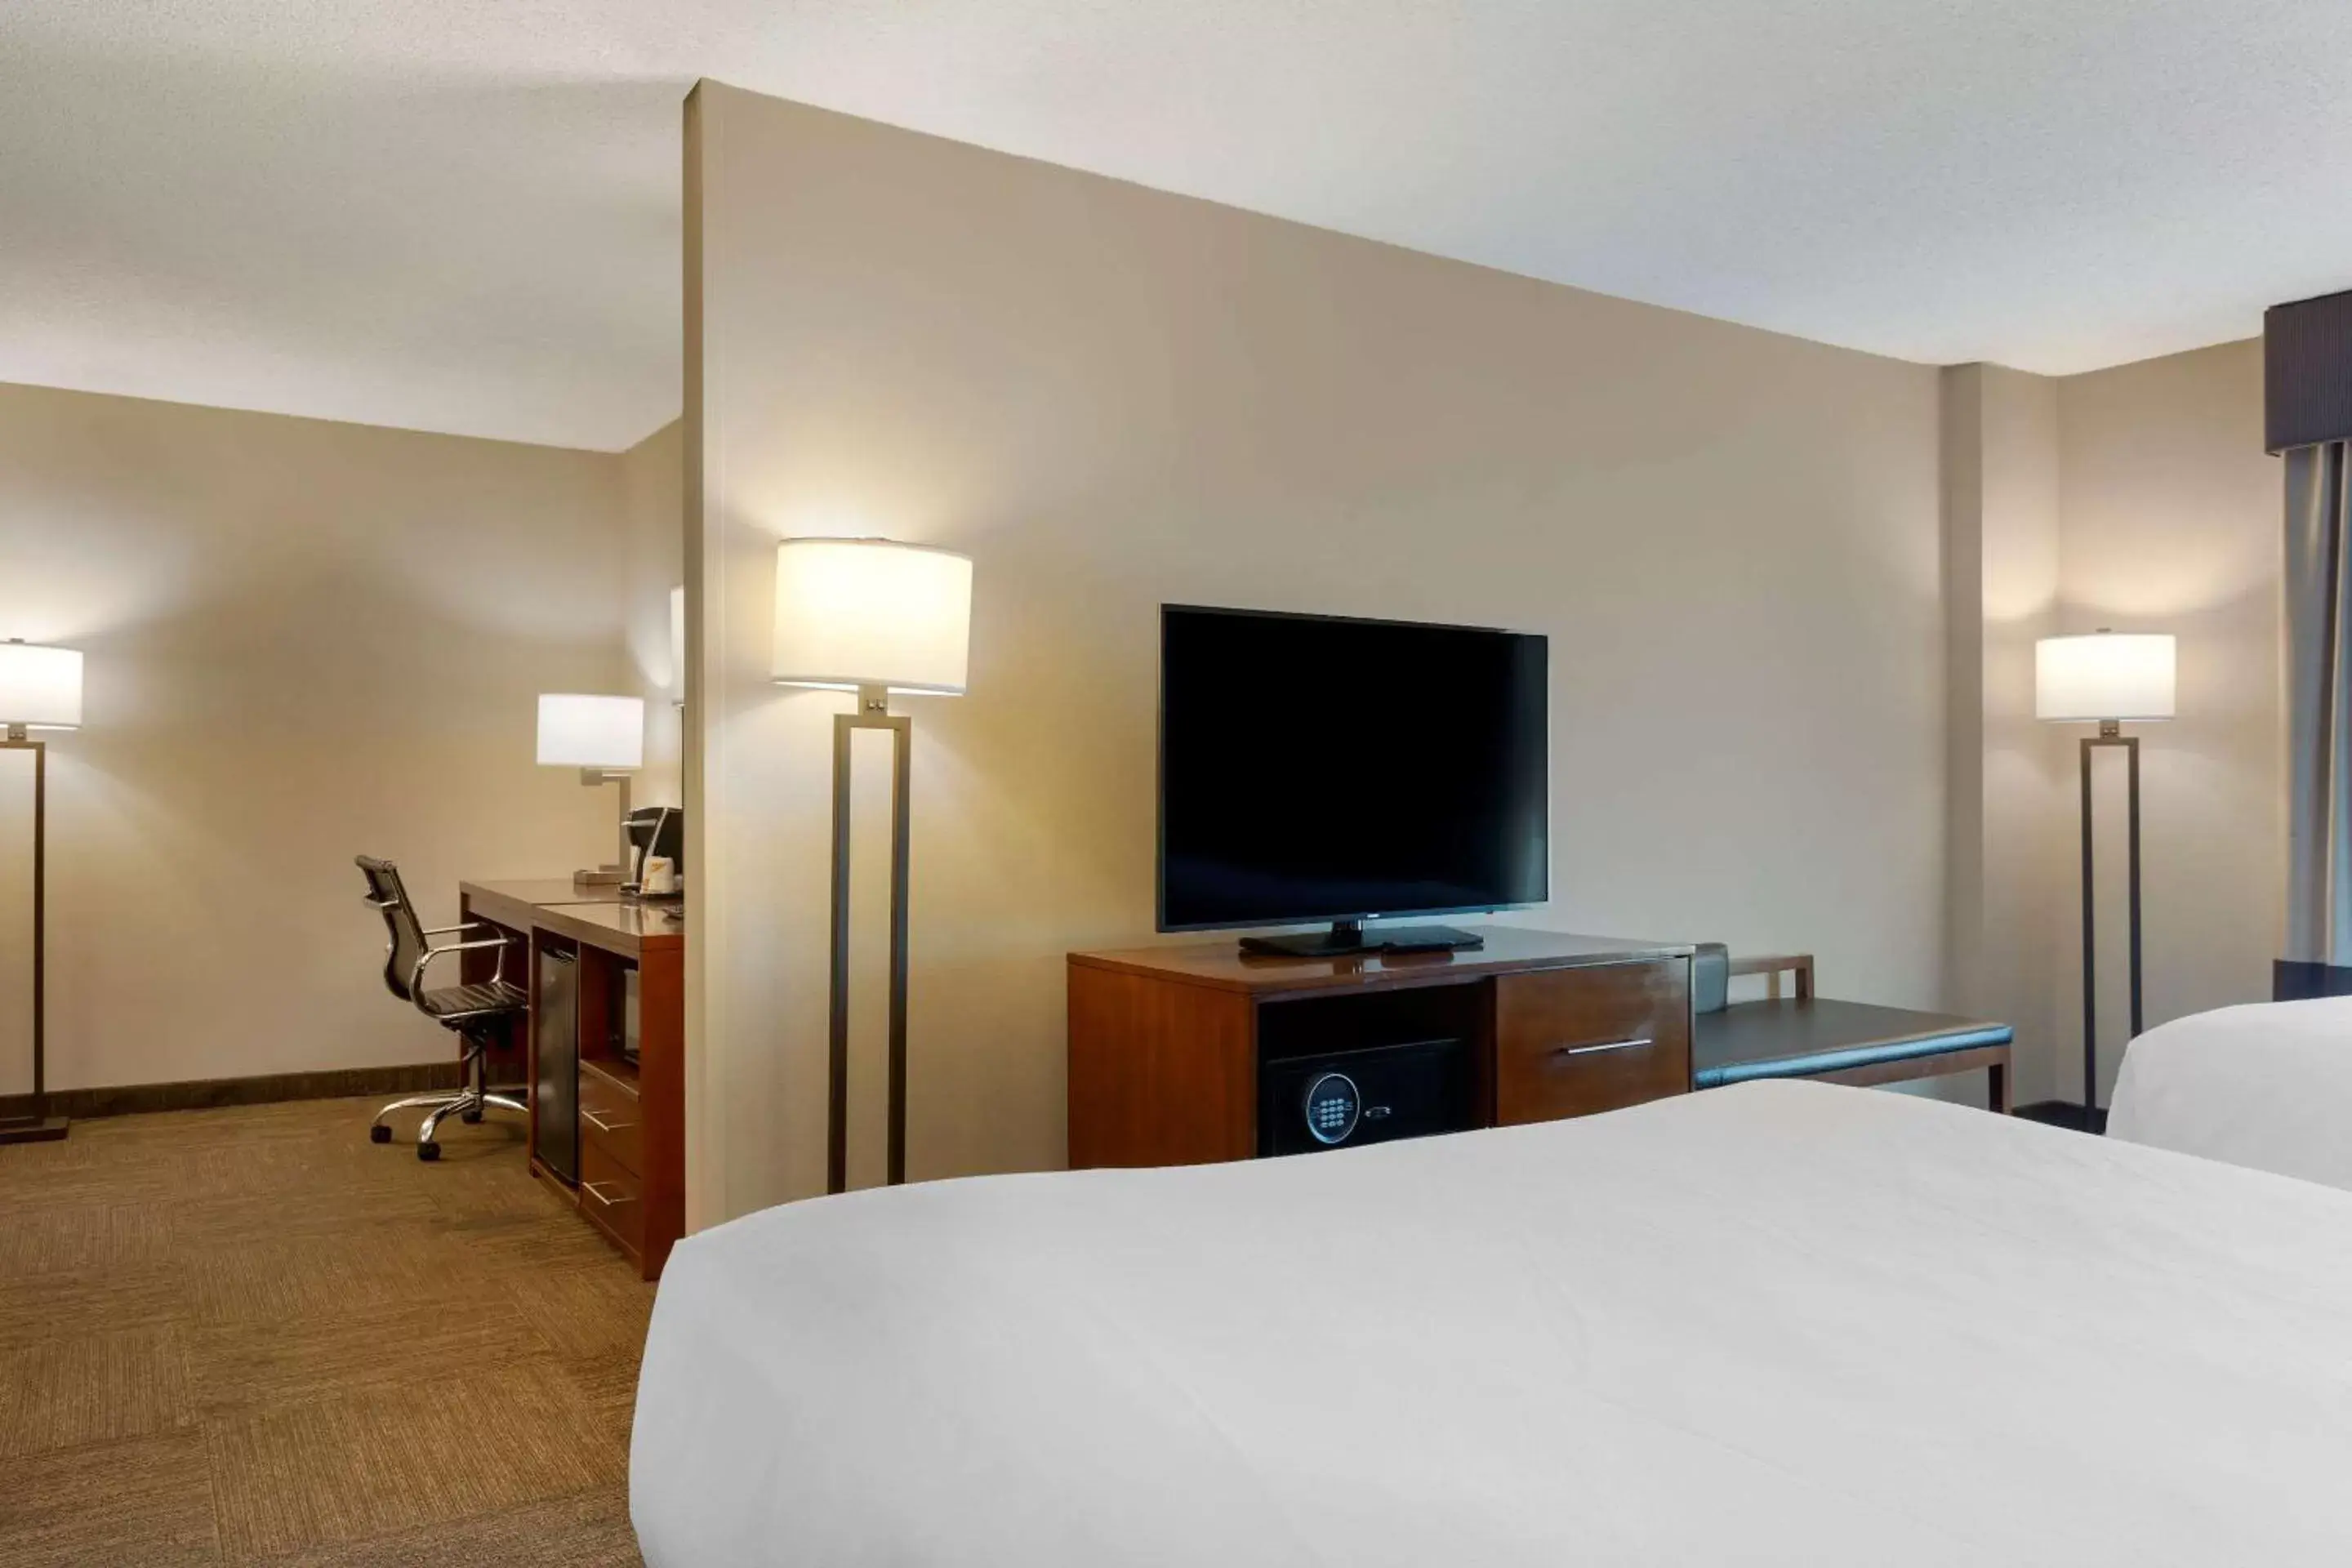 Bedroom, TV/Entertainment Center in Comfort Inn & Suites Presidential